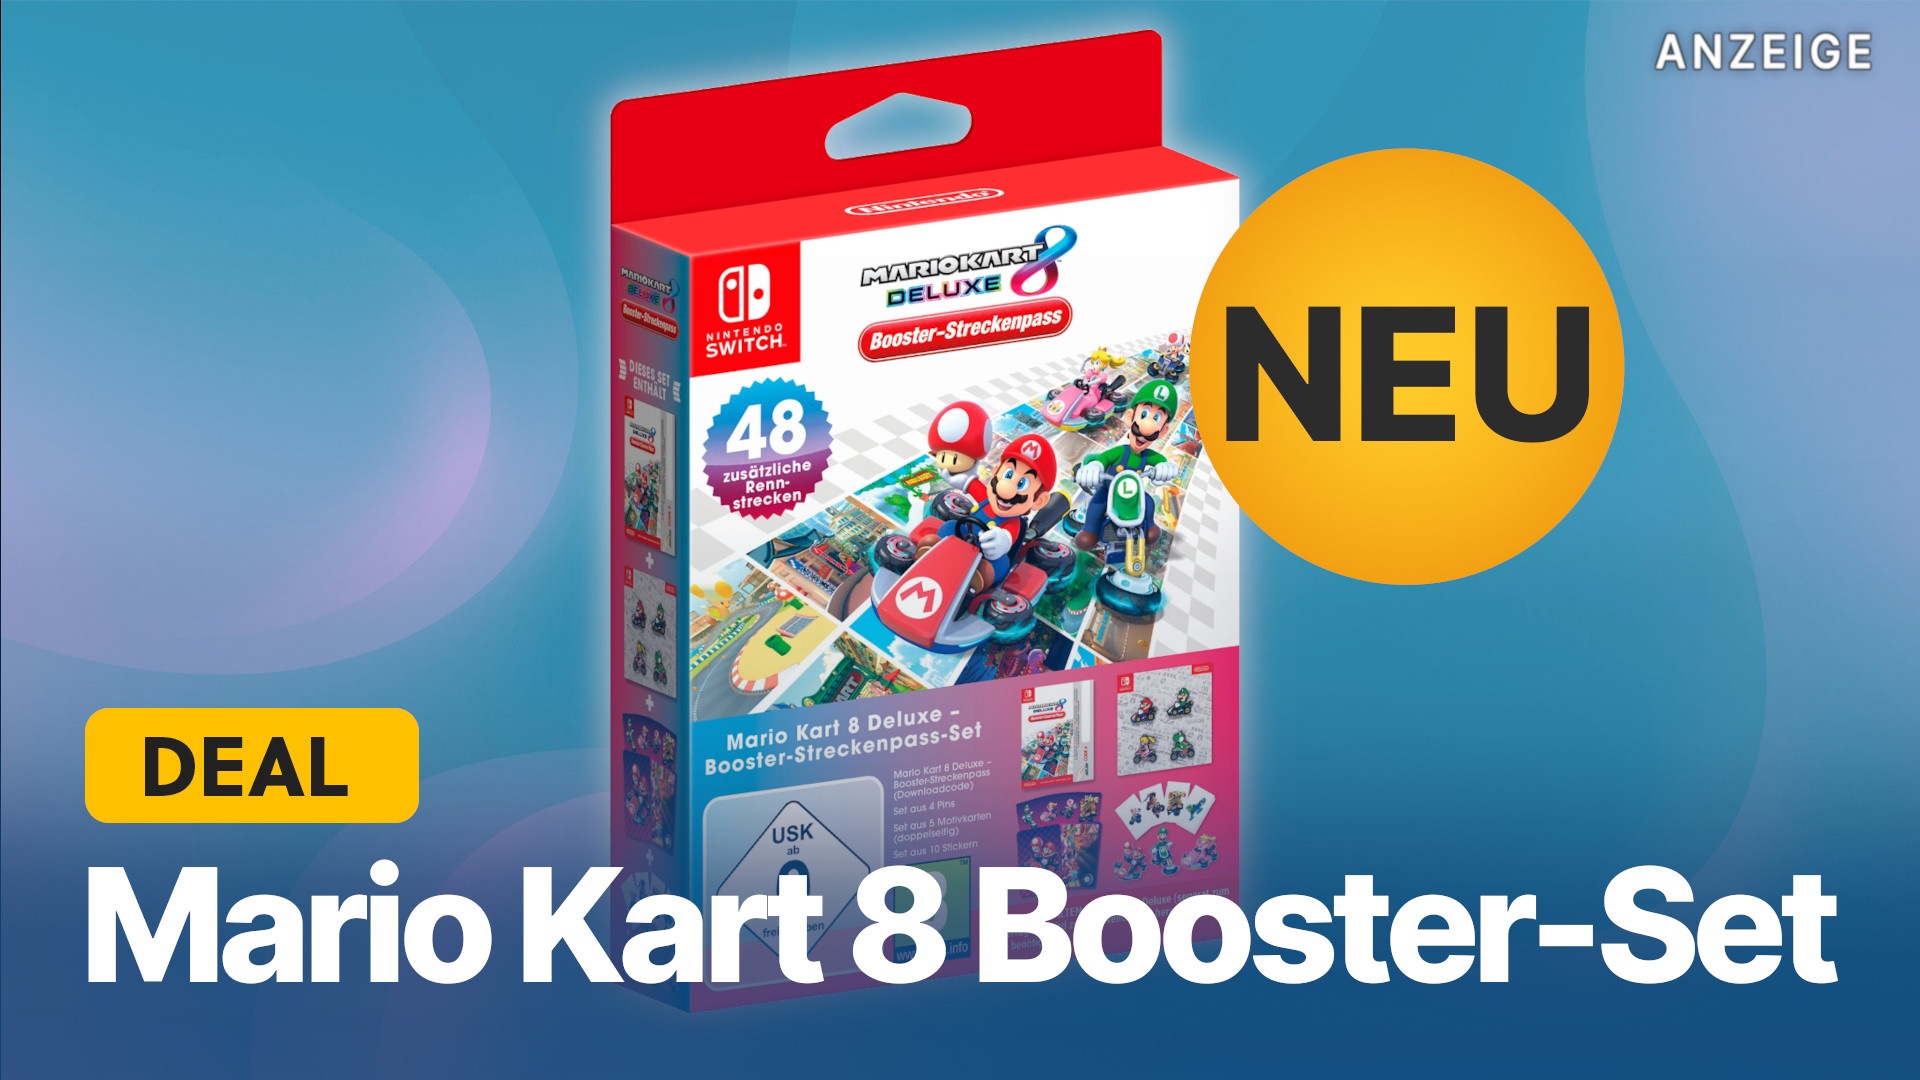 Mario Kart 8 Deluxe Booster-Streckenpass jetzt Amazon kaufen bei Extras mit